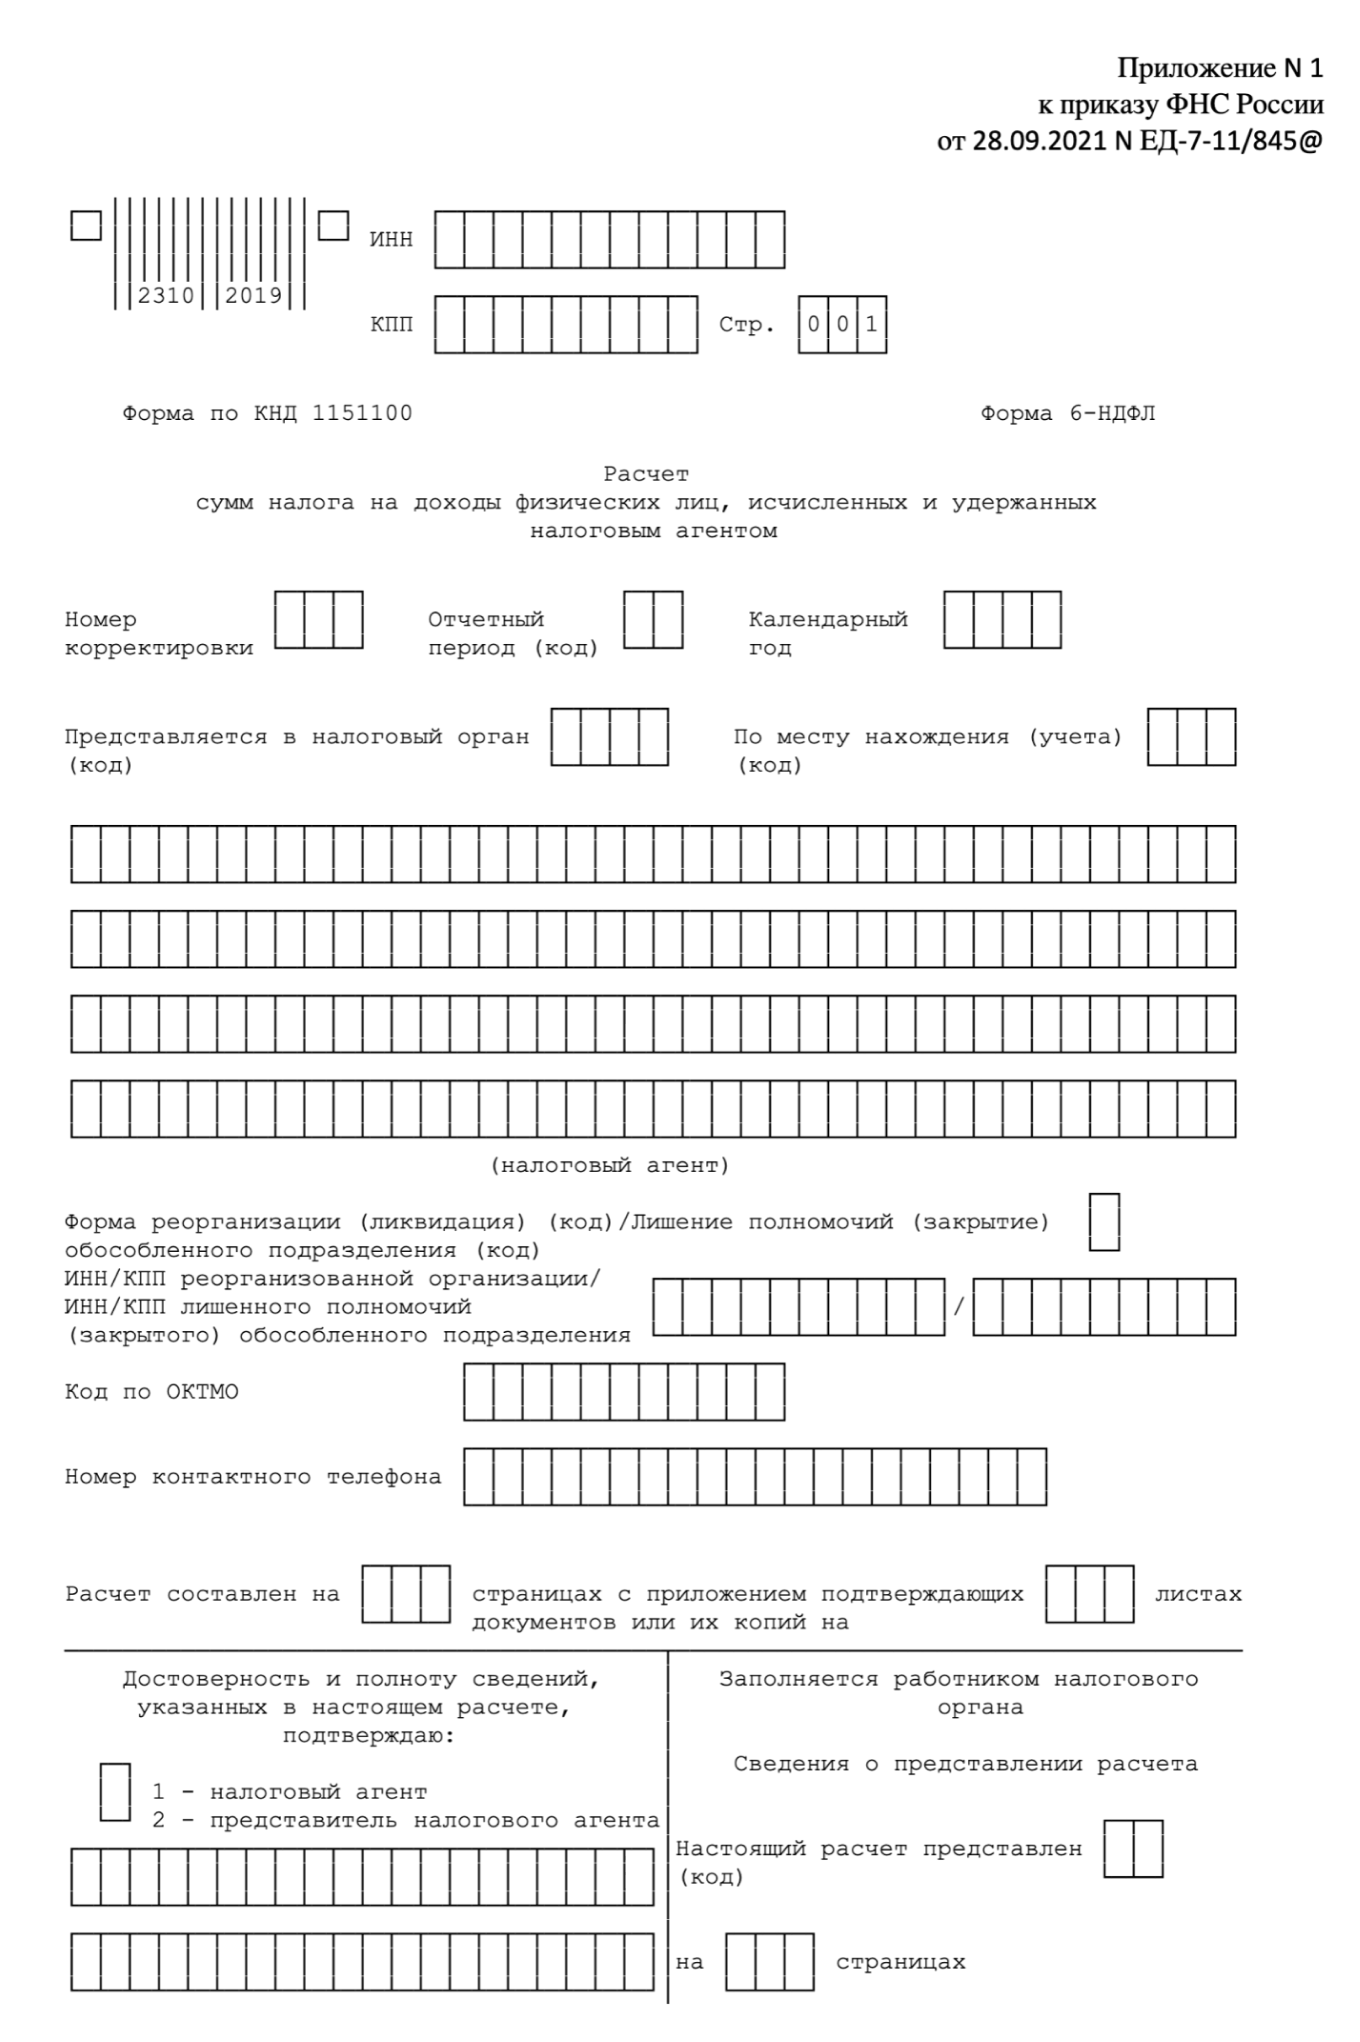 Расчет сумм НДФЛ, исчисленных и удержанных налоговым агентом. Форма 6-НДФЛ